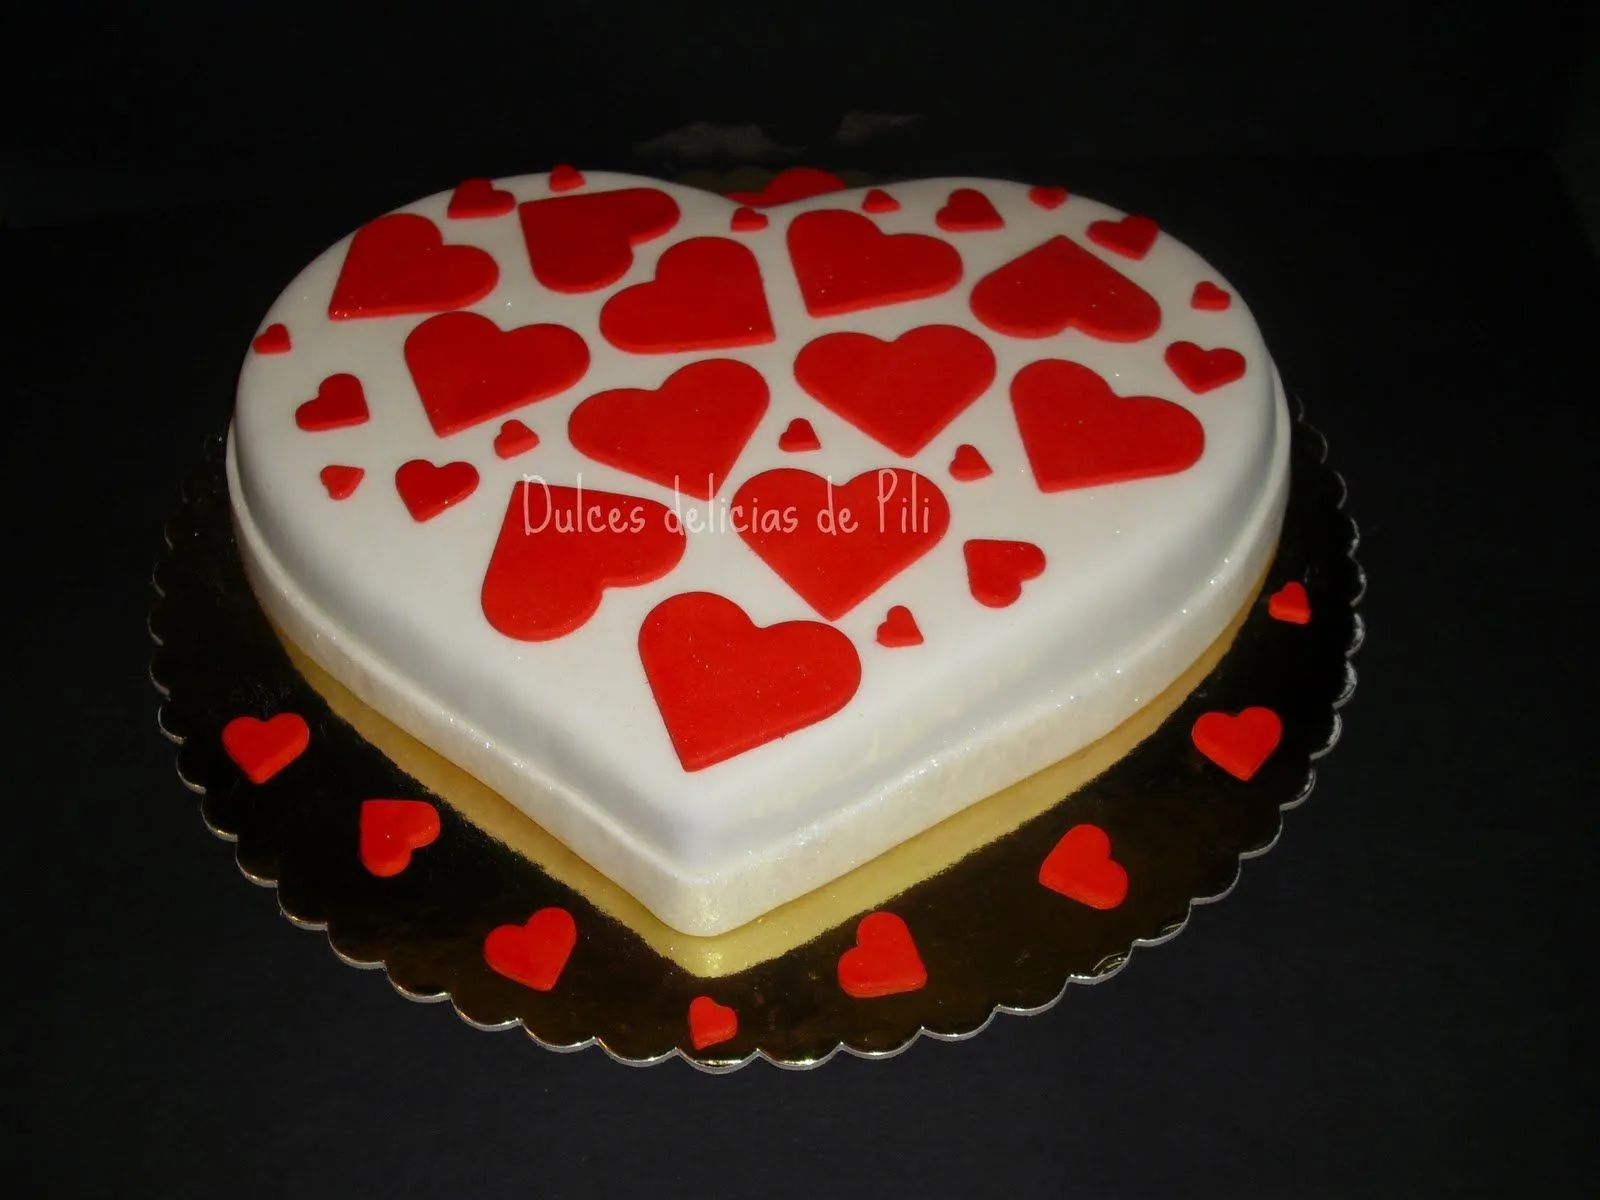  ... de bodas muy especial hice esta torta en forma de corazon lleno de